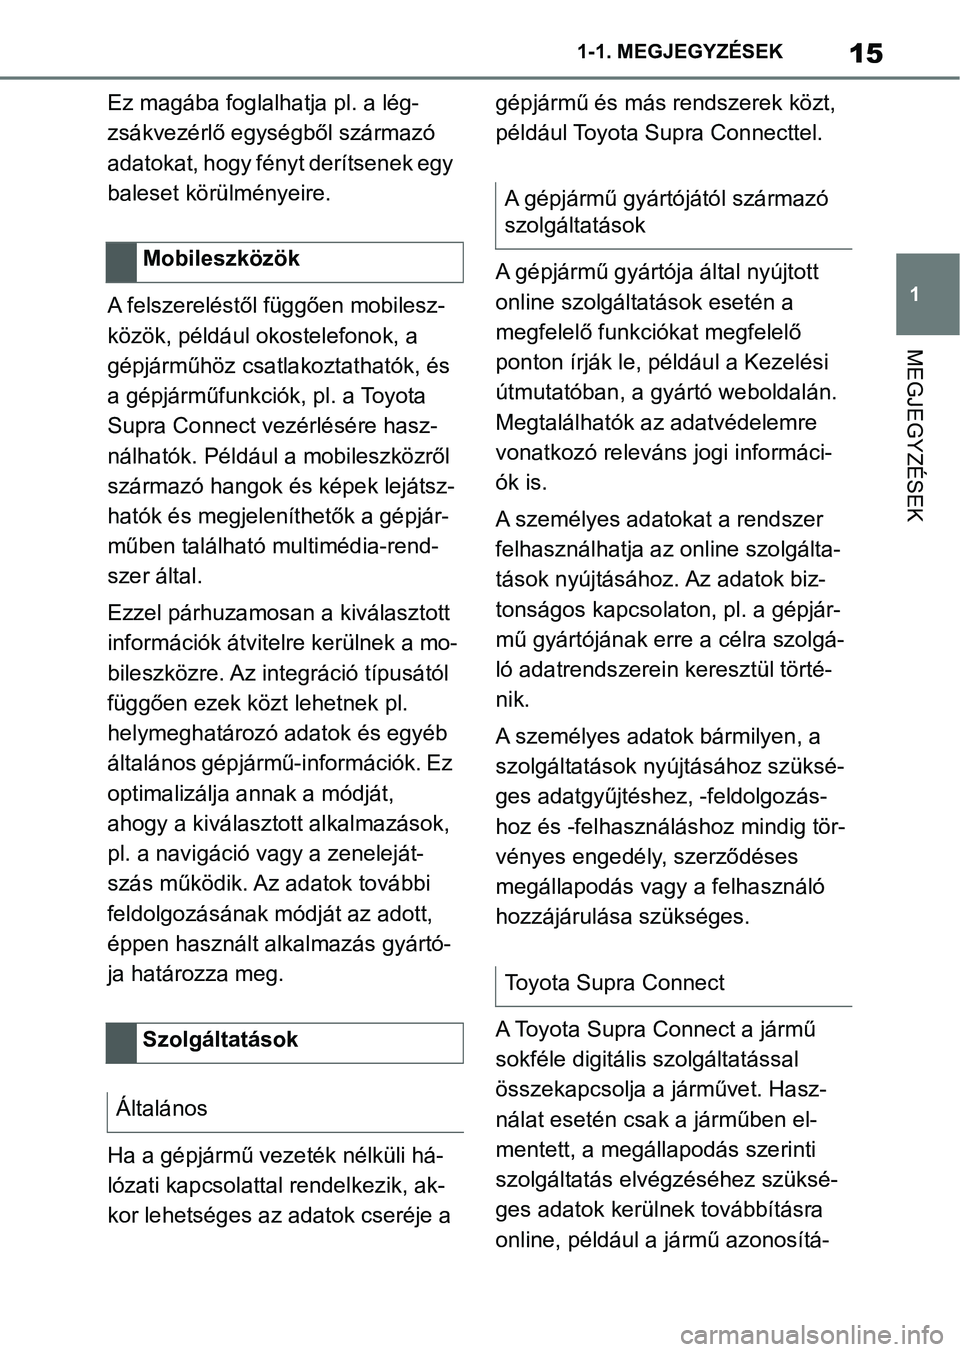 TOYOTA SUPRA 2020  Kezelési útmutató (in Hungarian) 15
1
1-1. MEGJEGYZÉSEK
MEGJEGYZÉSEK
Ez magába foglalhatja pl. a lég-
zsákvezérlő egységből származó 
adatokat, hogy fényt derítsenek egy 
baleset körülményeire.
A felszereléstől füg